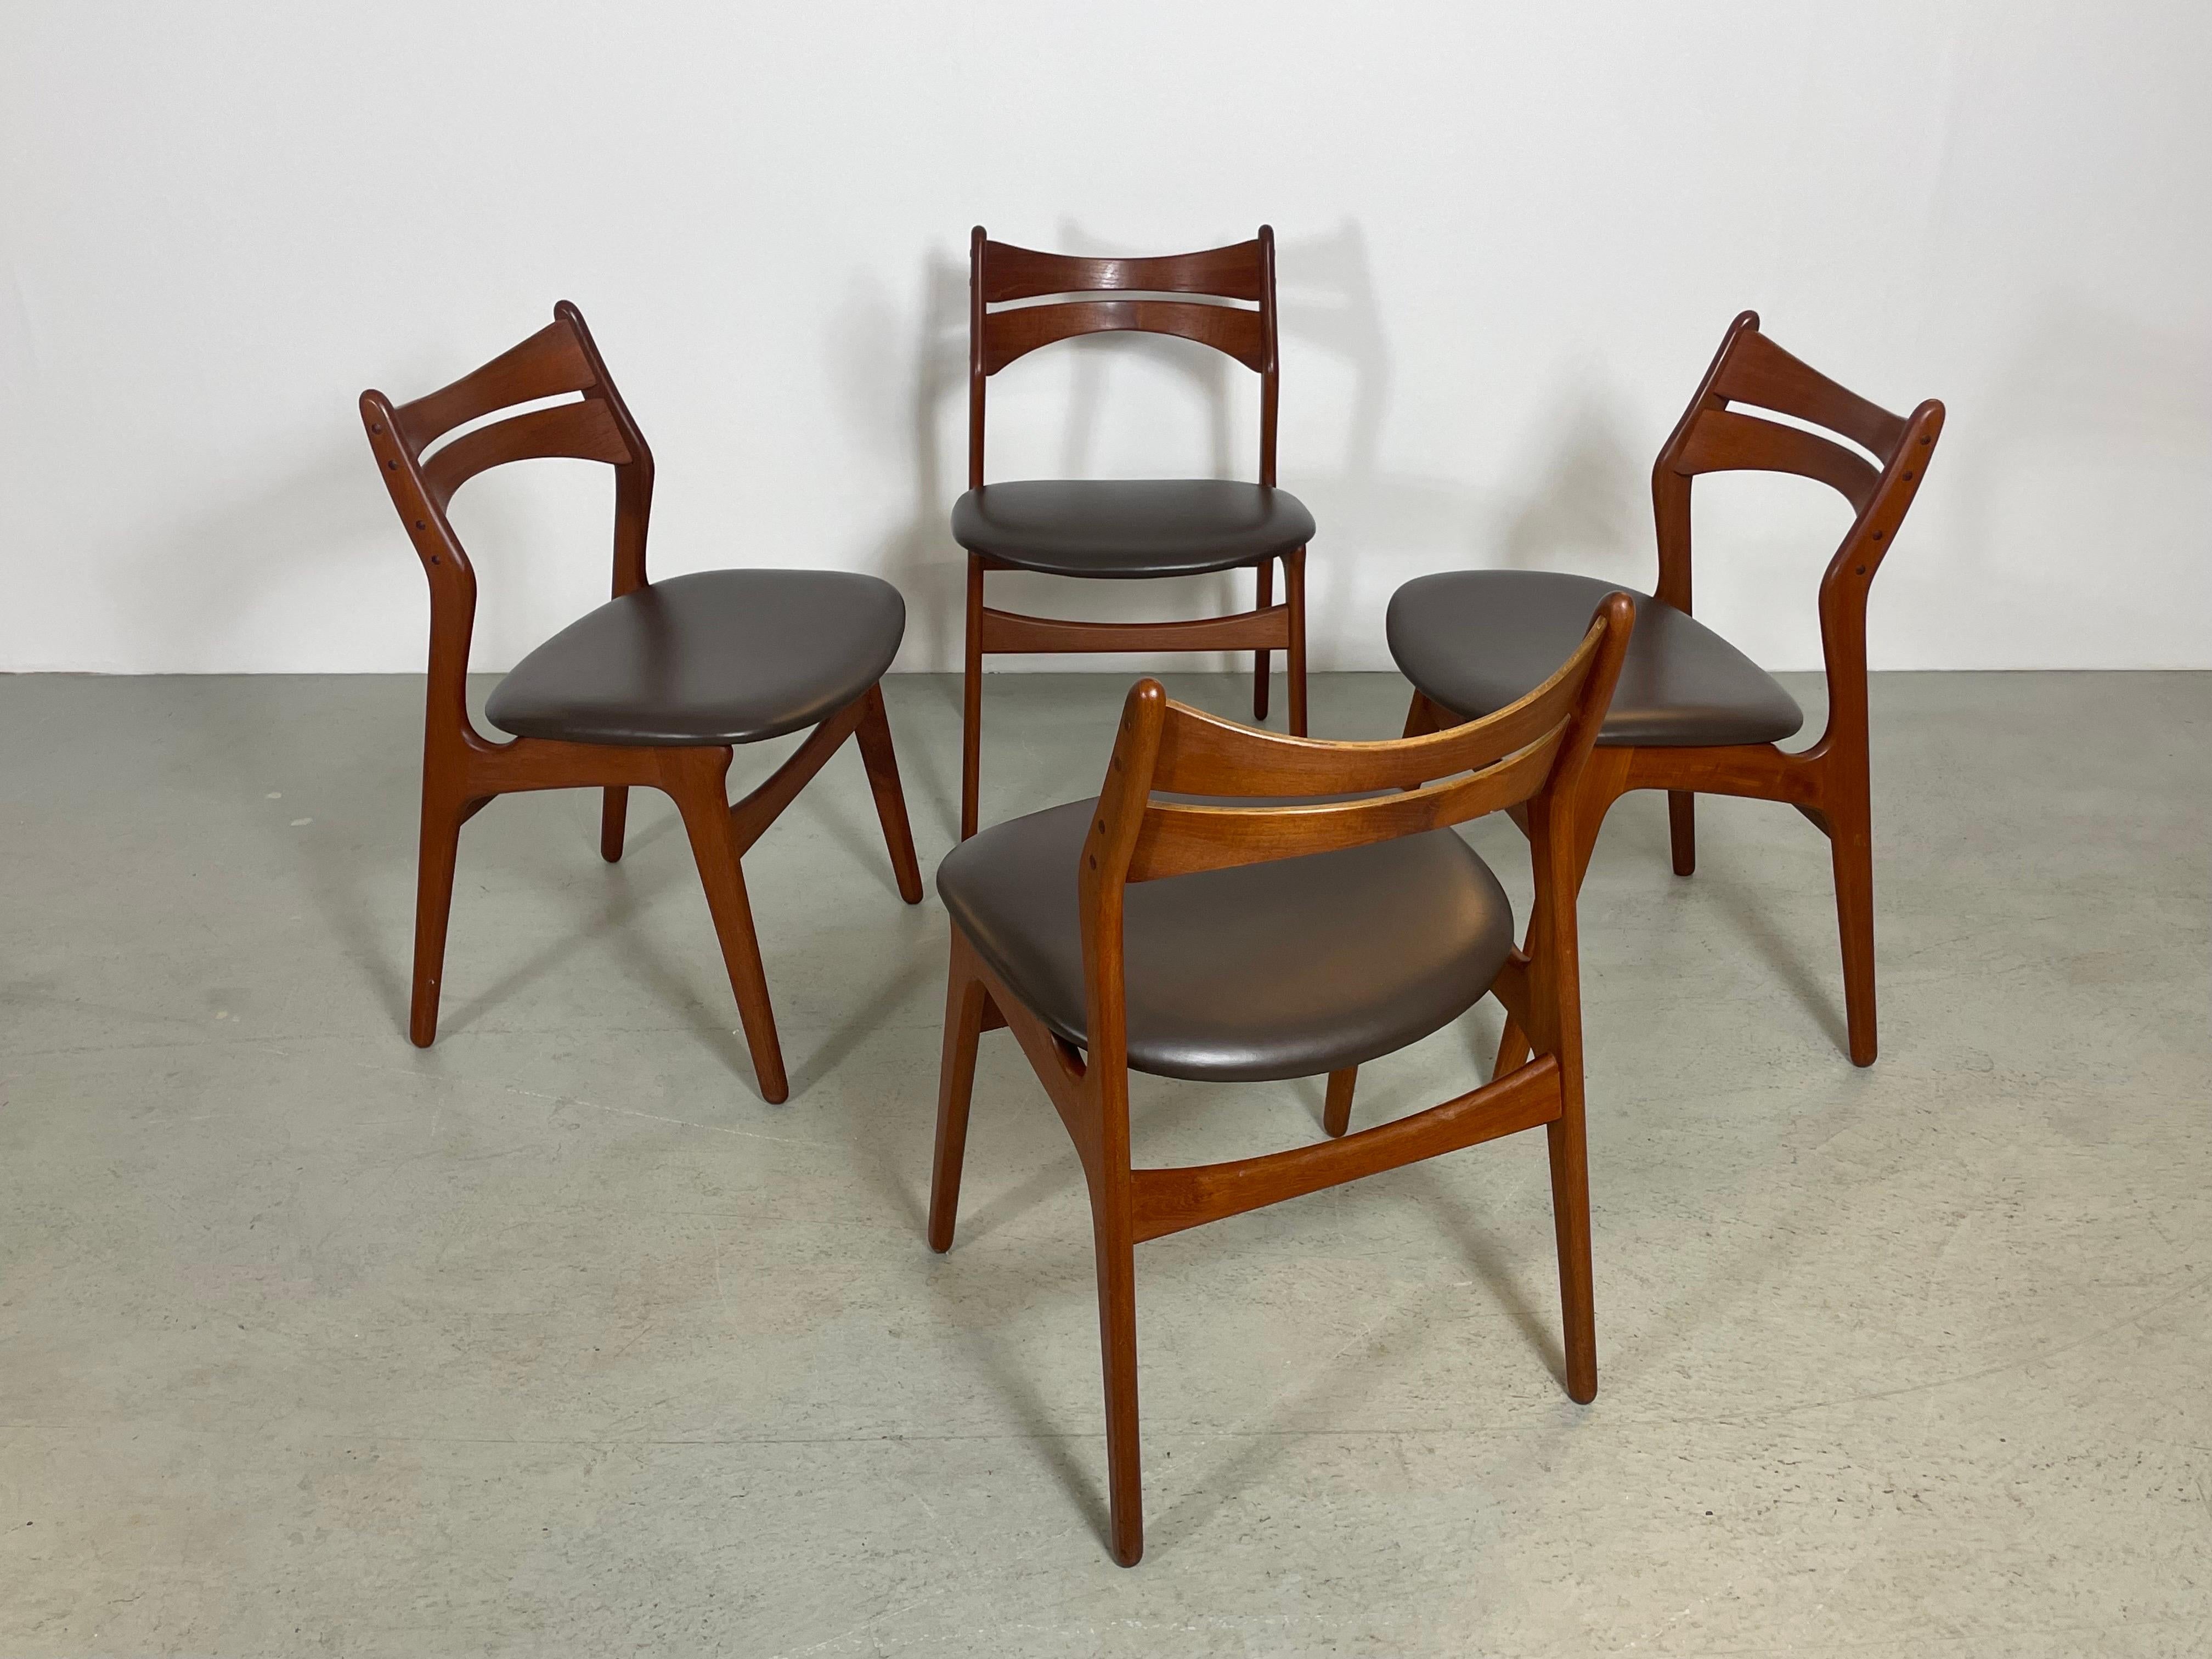 Un ensemble de quatre chaises de salle à manger du milieu du siècle par le designer danois Erik Buch. Fabriqué au Danemark dans les années 1950 par O.D. Mobler. Il s'agit d'un véritable classique du design qui se caractérise par un cadre en bois